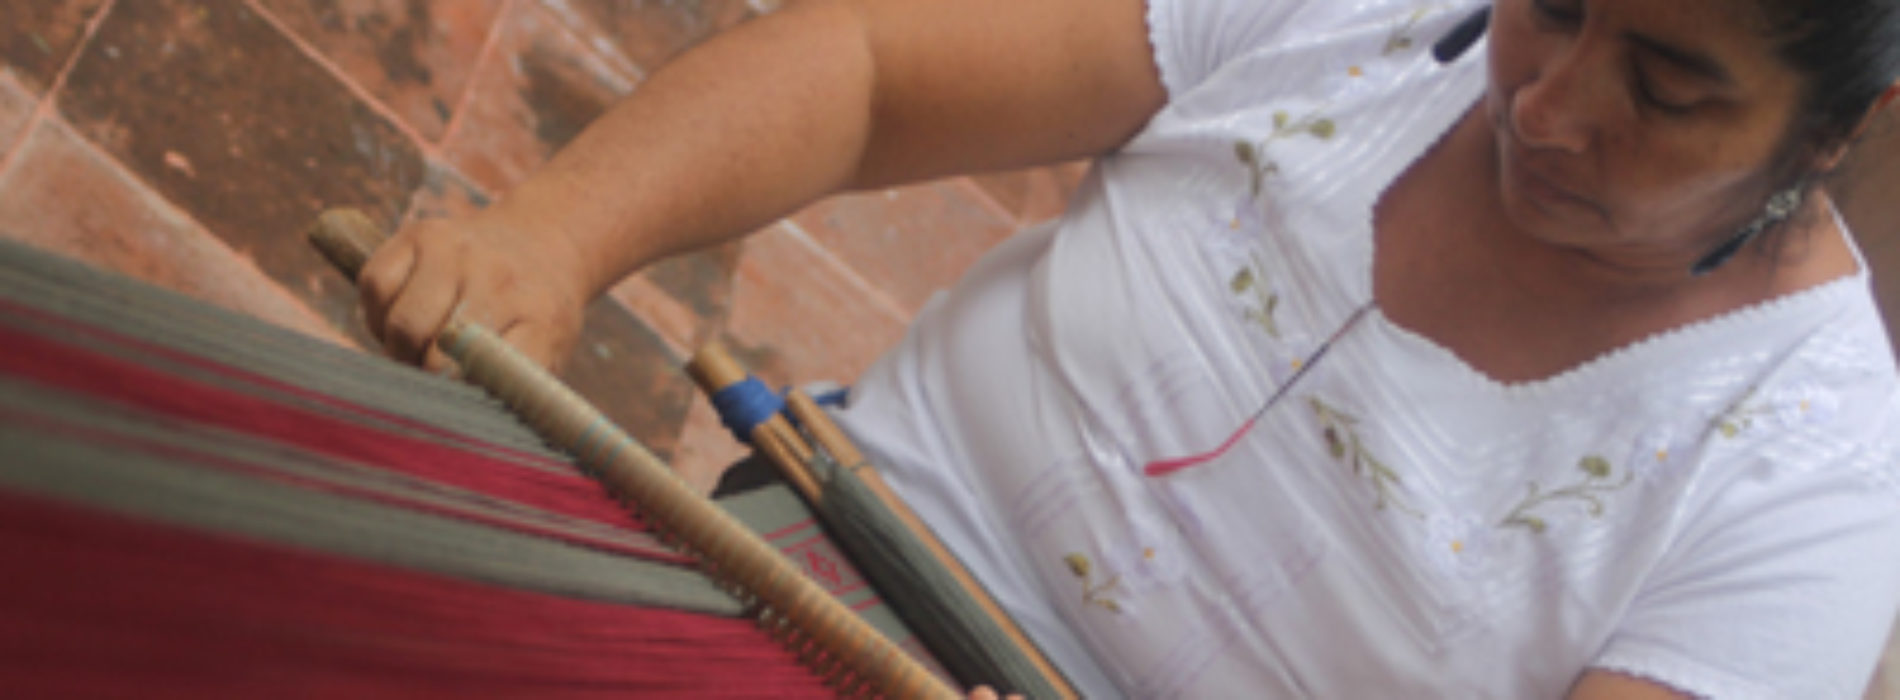 Ruta Mágica de las Artesanías, radiografía de la historia y cultura de Oaxaca